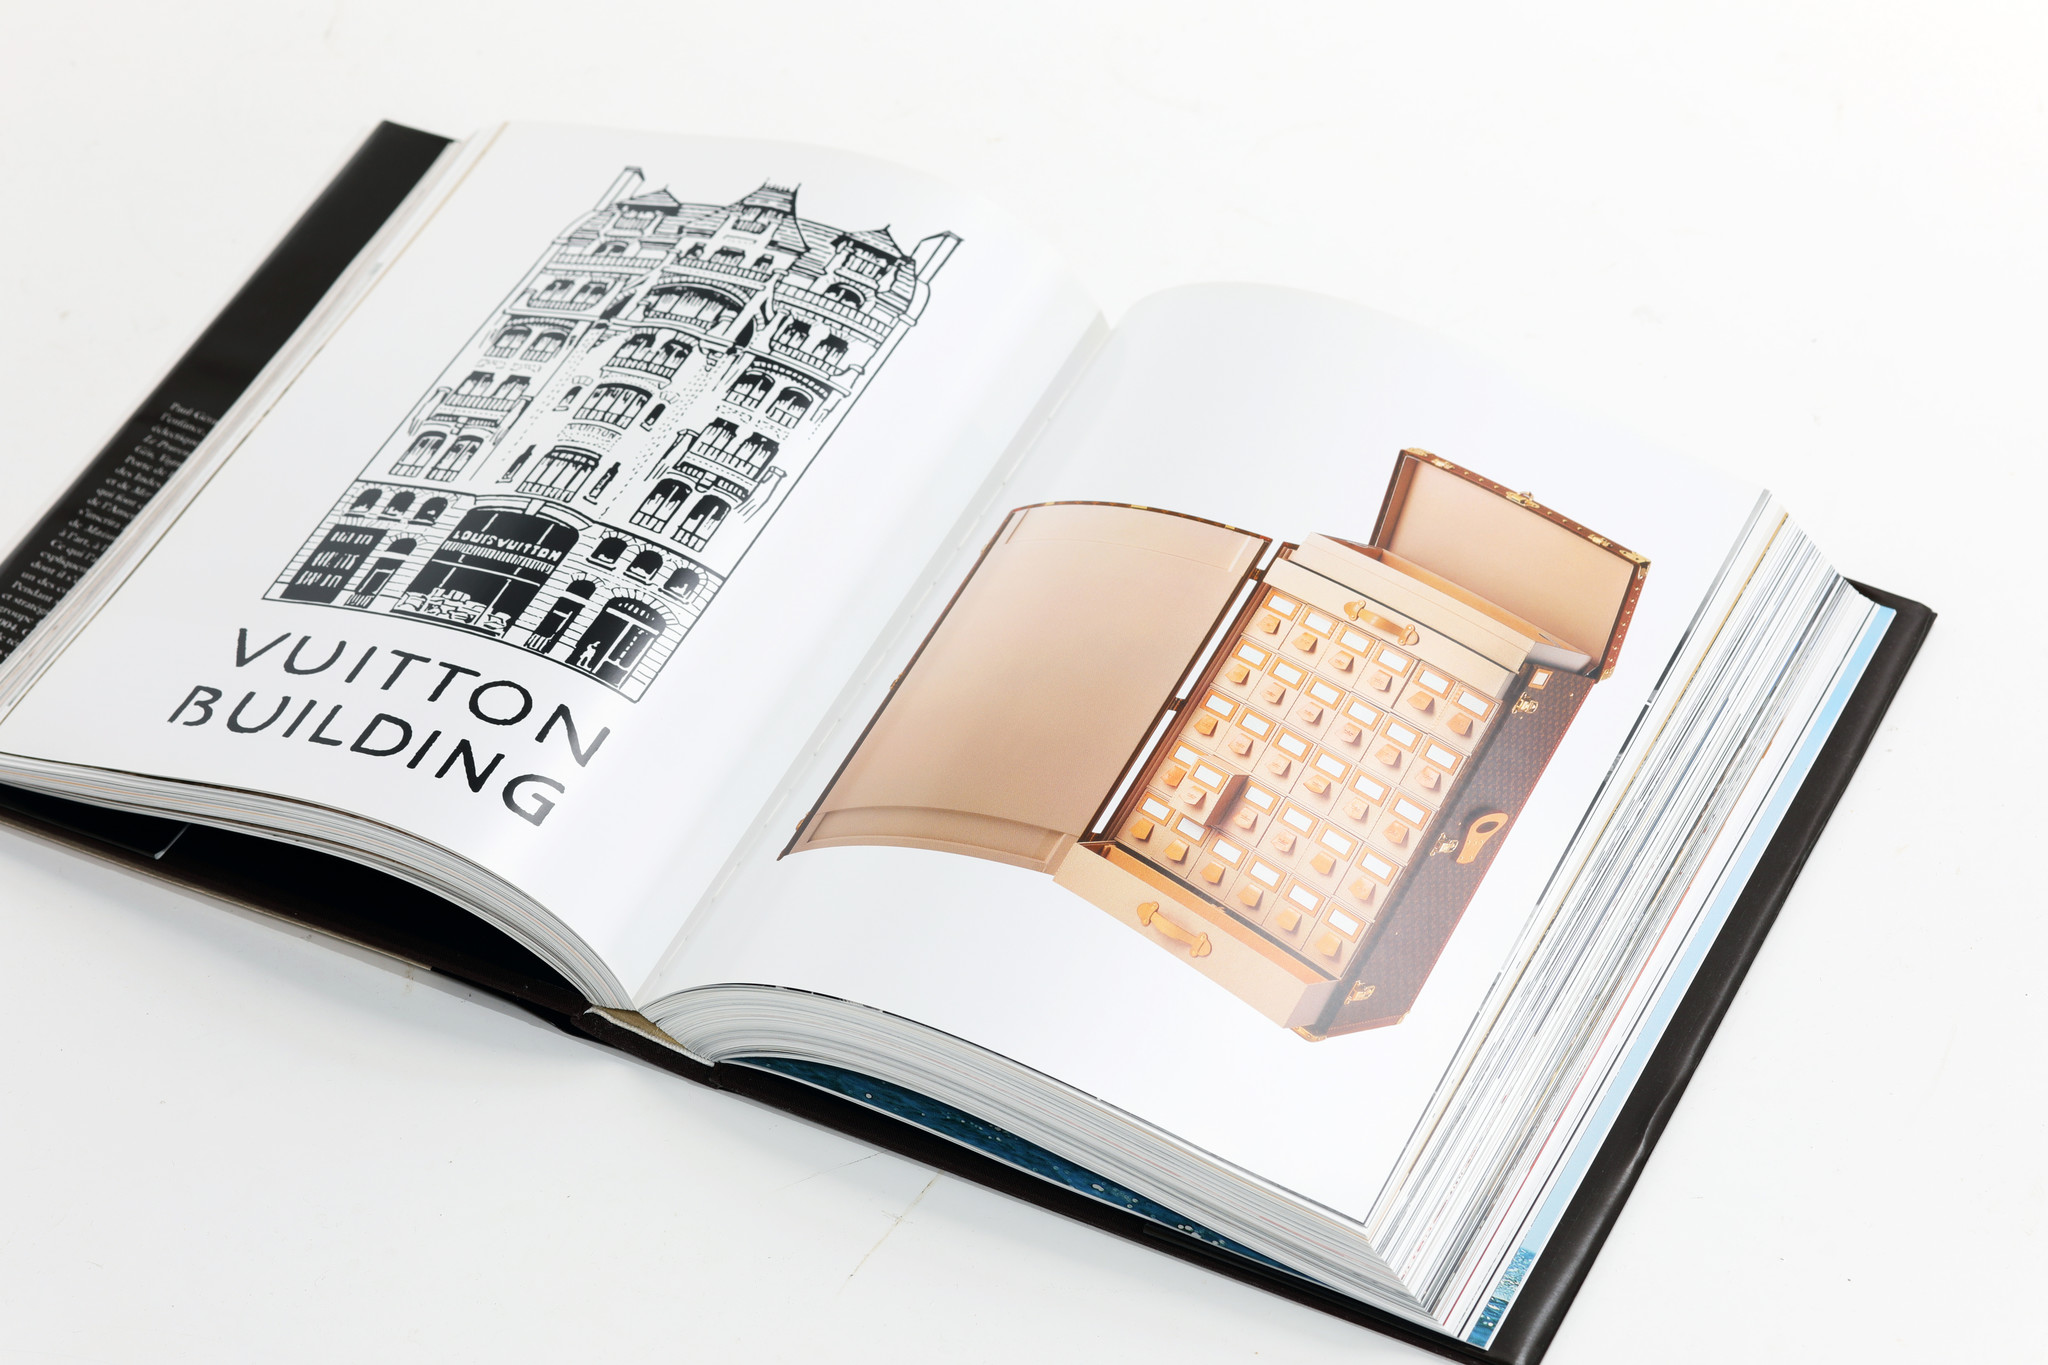 Livre Louis Vuitton "La naissance du luxe moderne", 2004